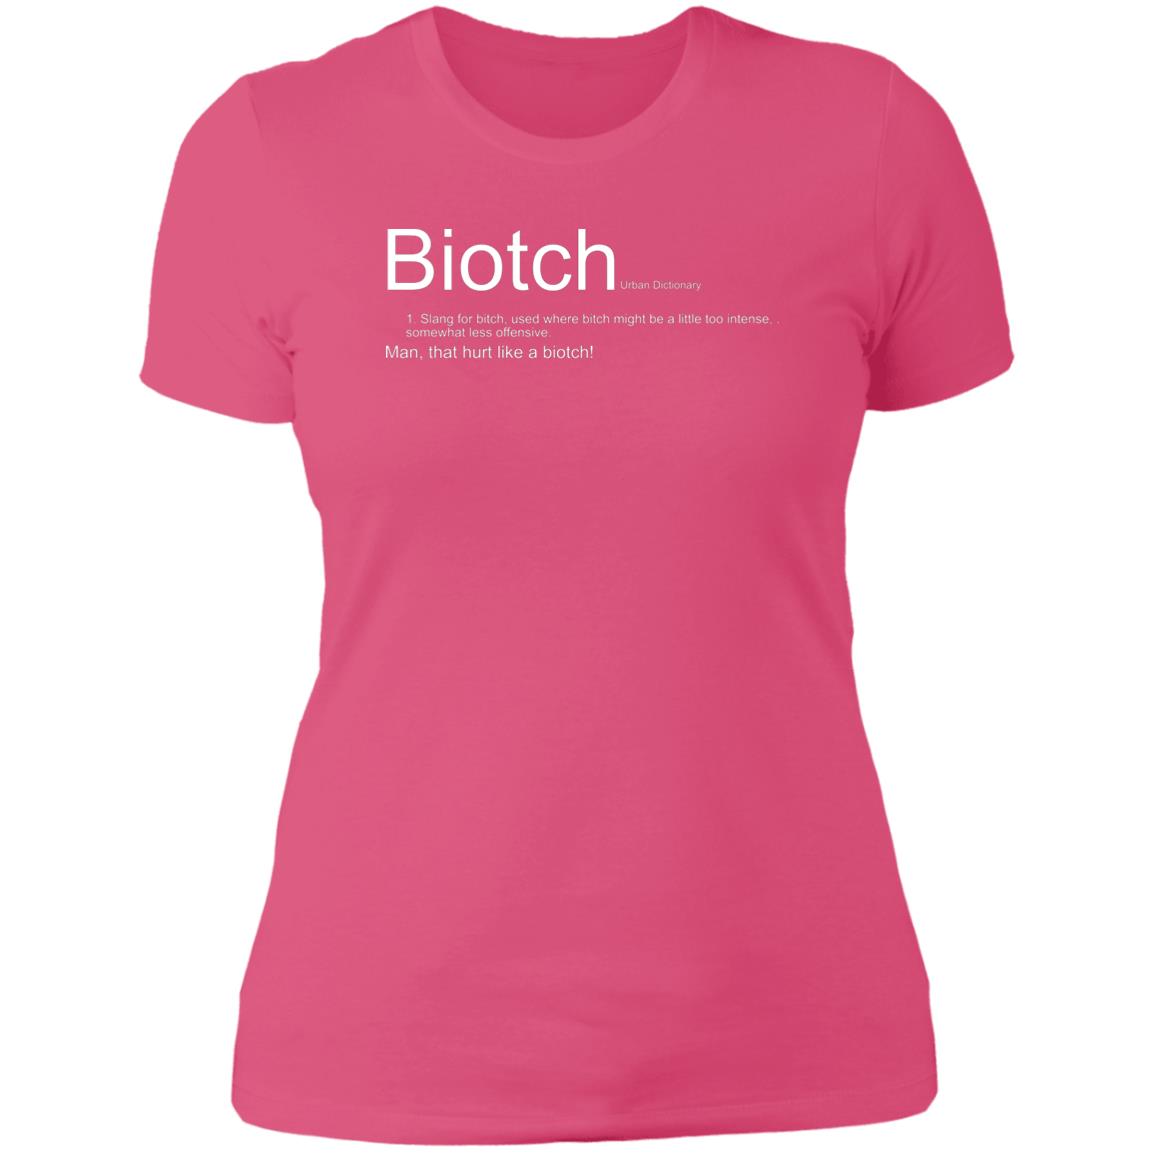 Biotch- women's